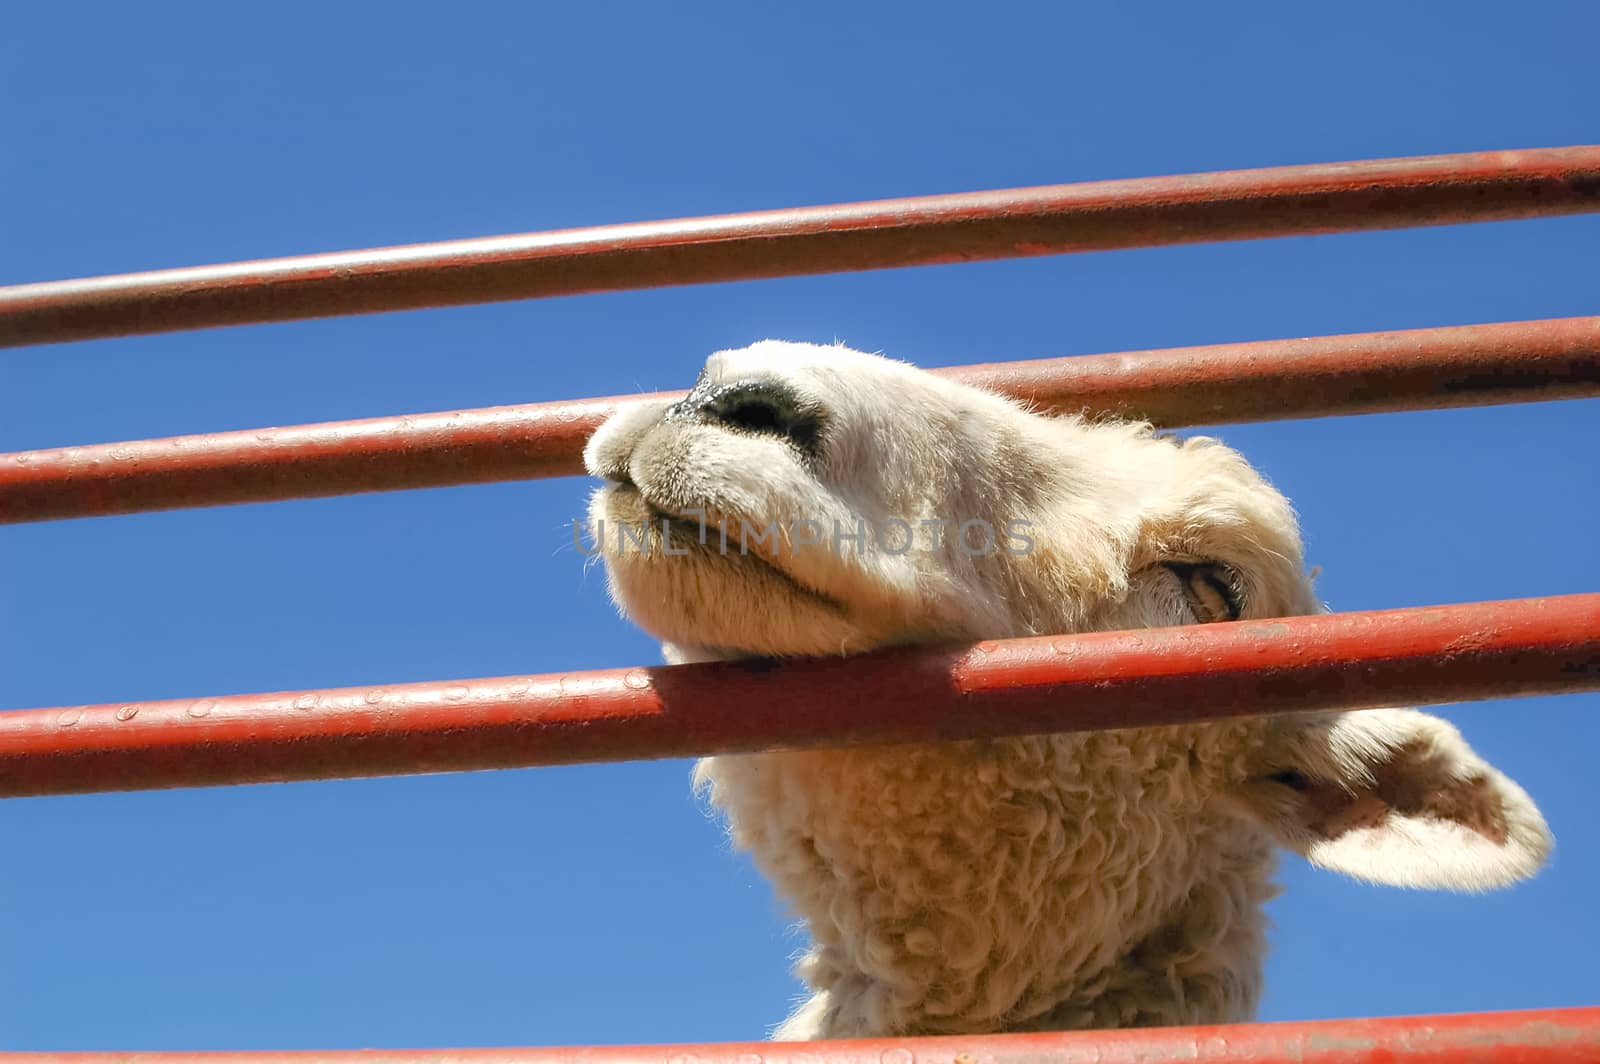 closeup of a lamb in a pen at a livestock market